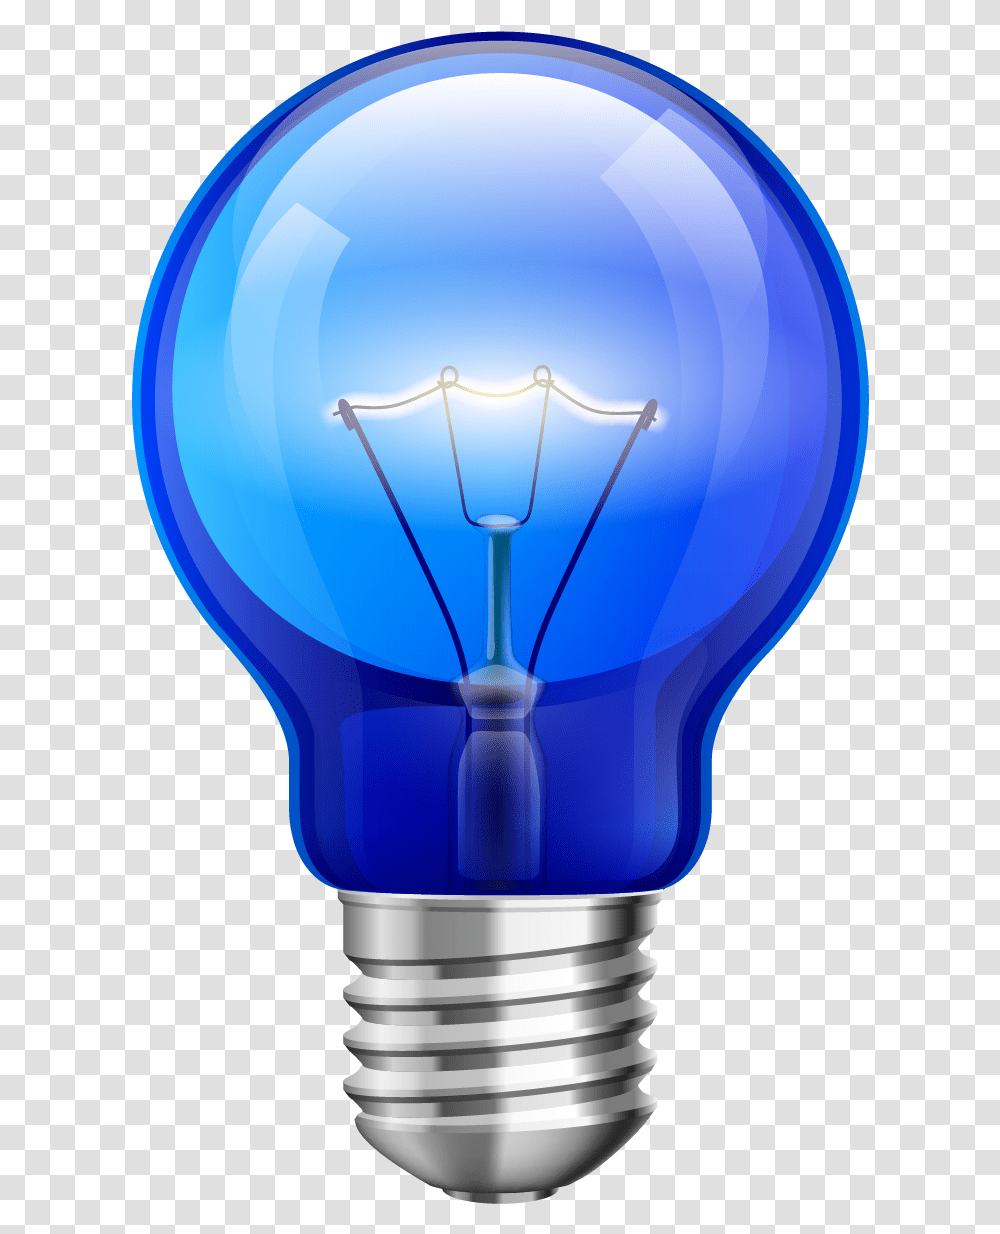 Free Bulb Konfest, Light, Lightbulb, Balloon, Lighting Transparent Png